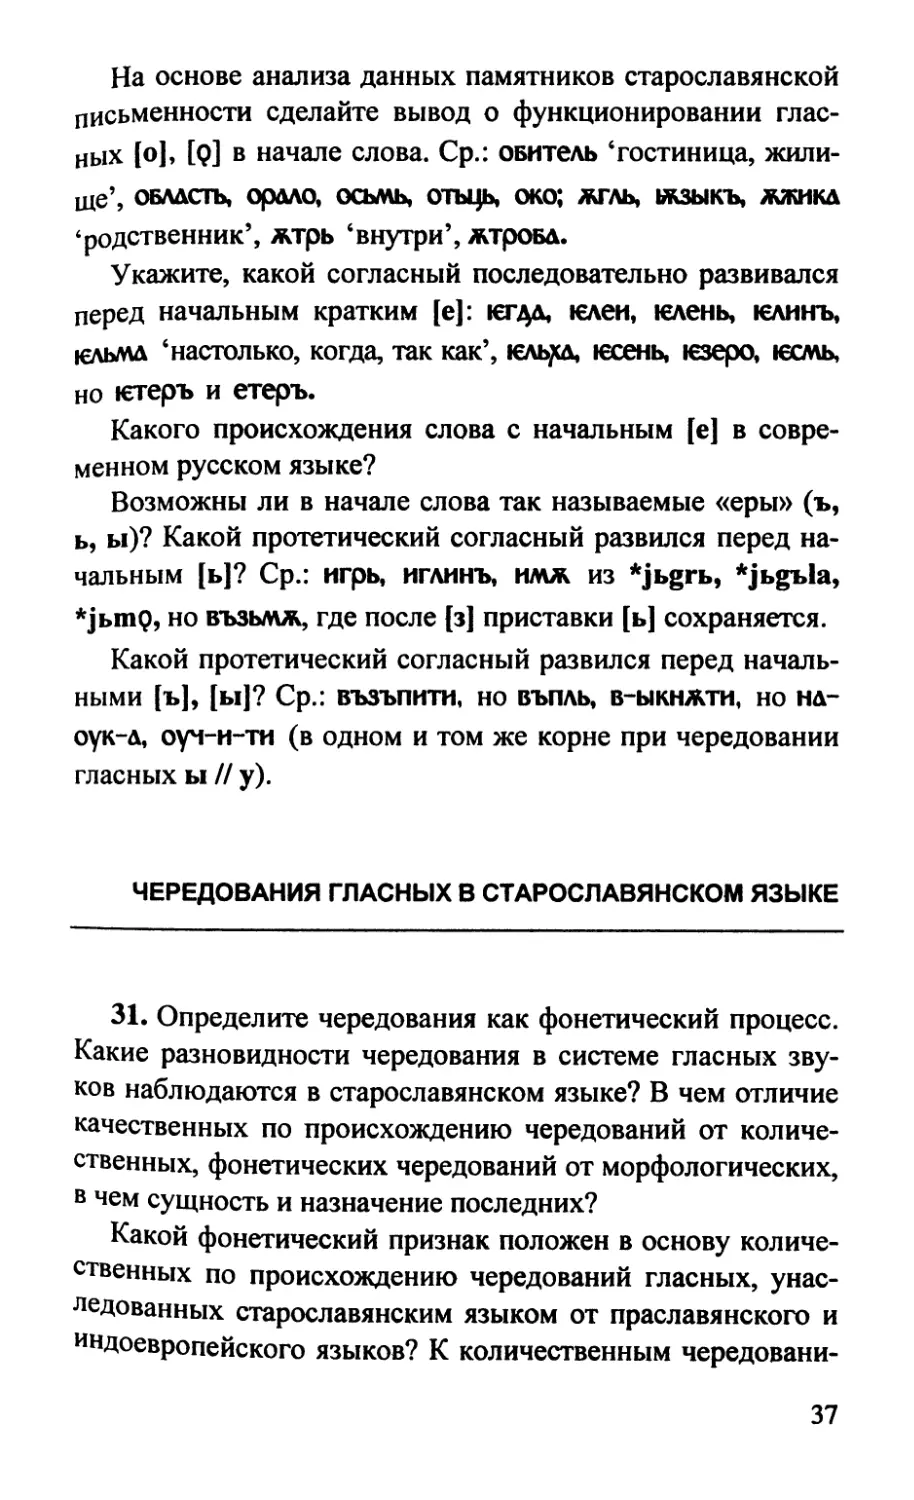 Чередования гласных в старославянском языке